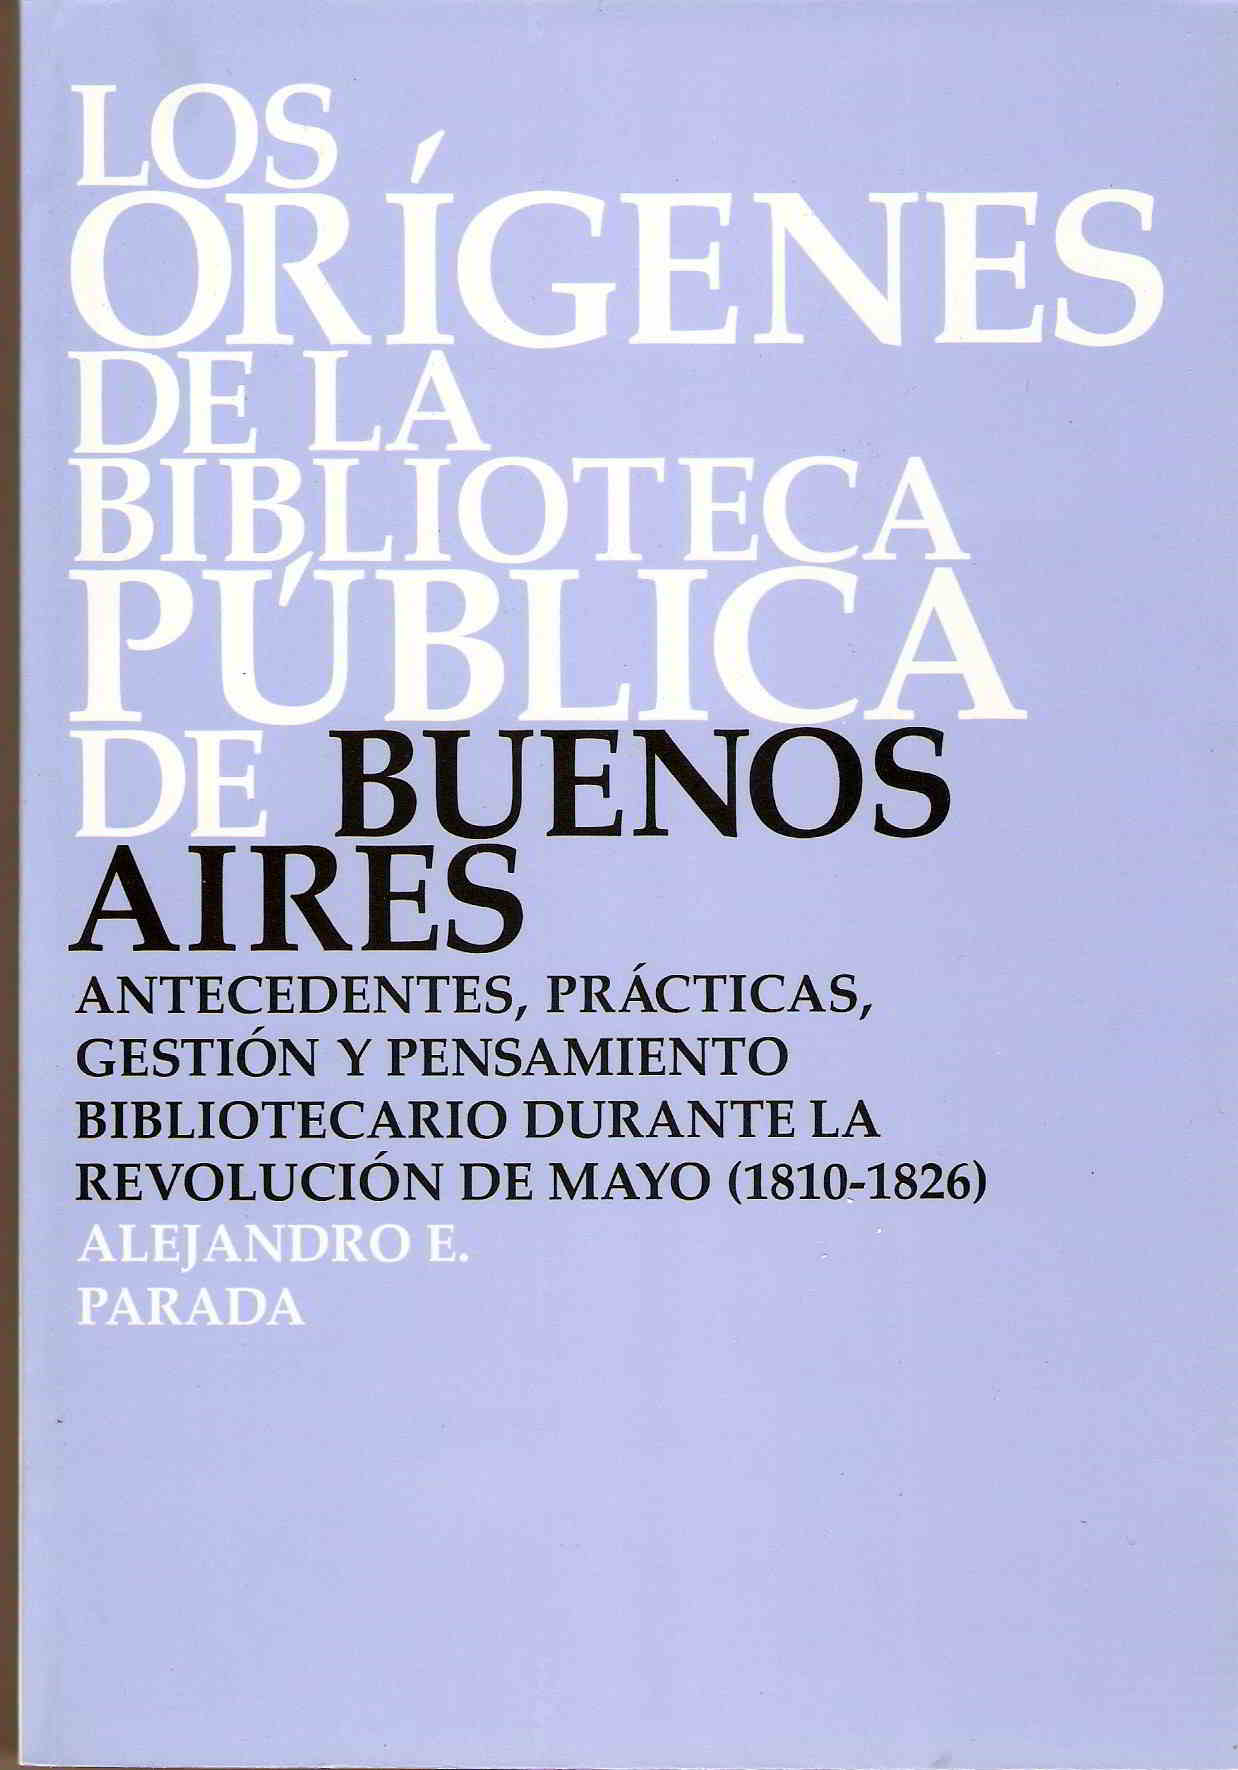 Los origenes de la biblioteca publica
de Buenos Aires : 1779 -1812